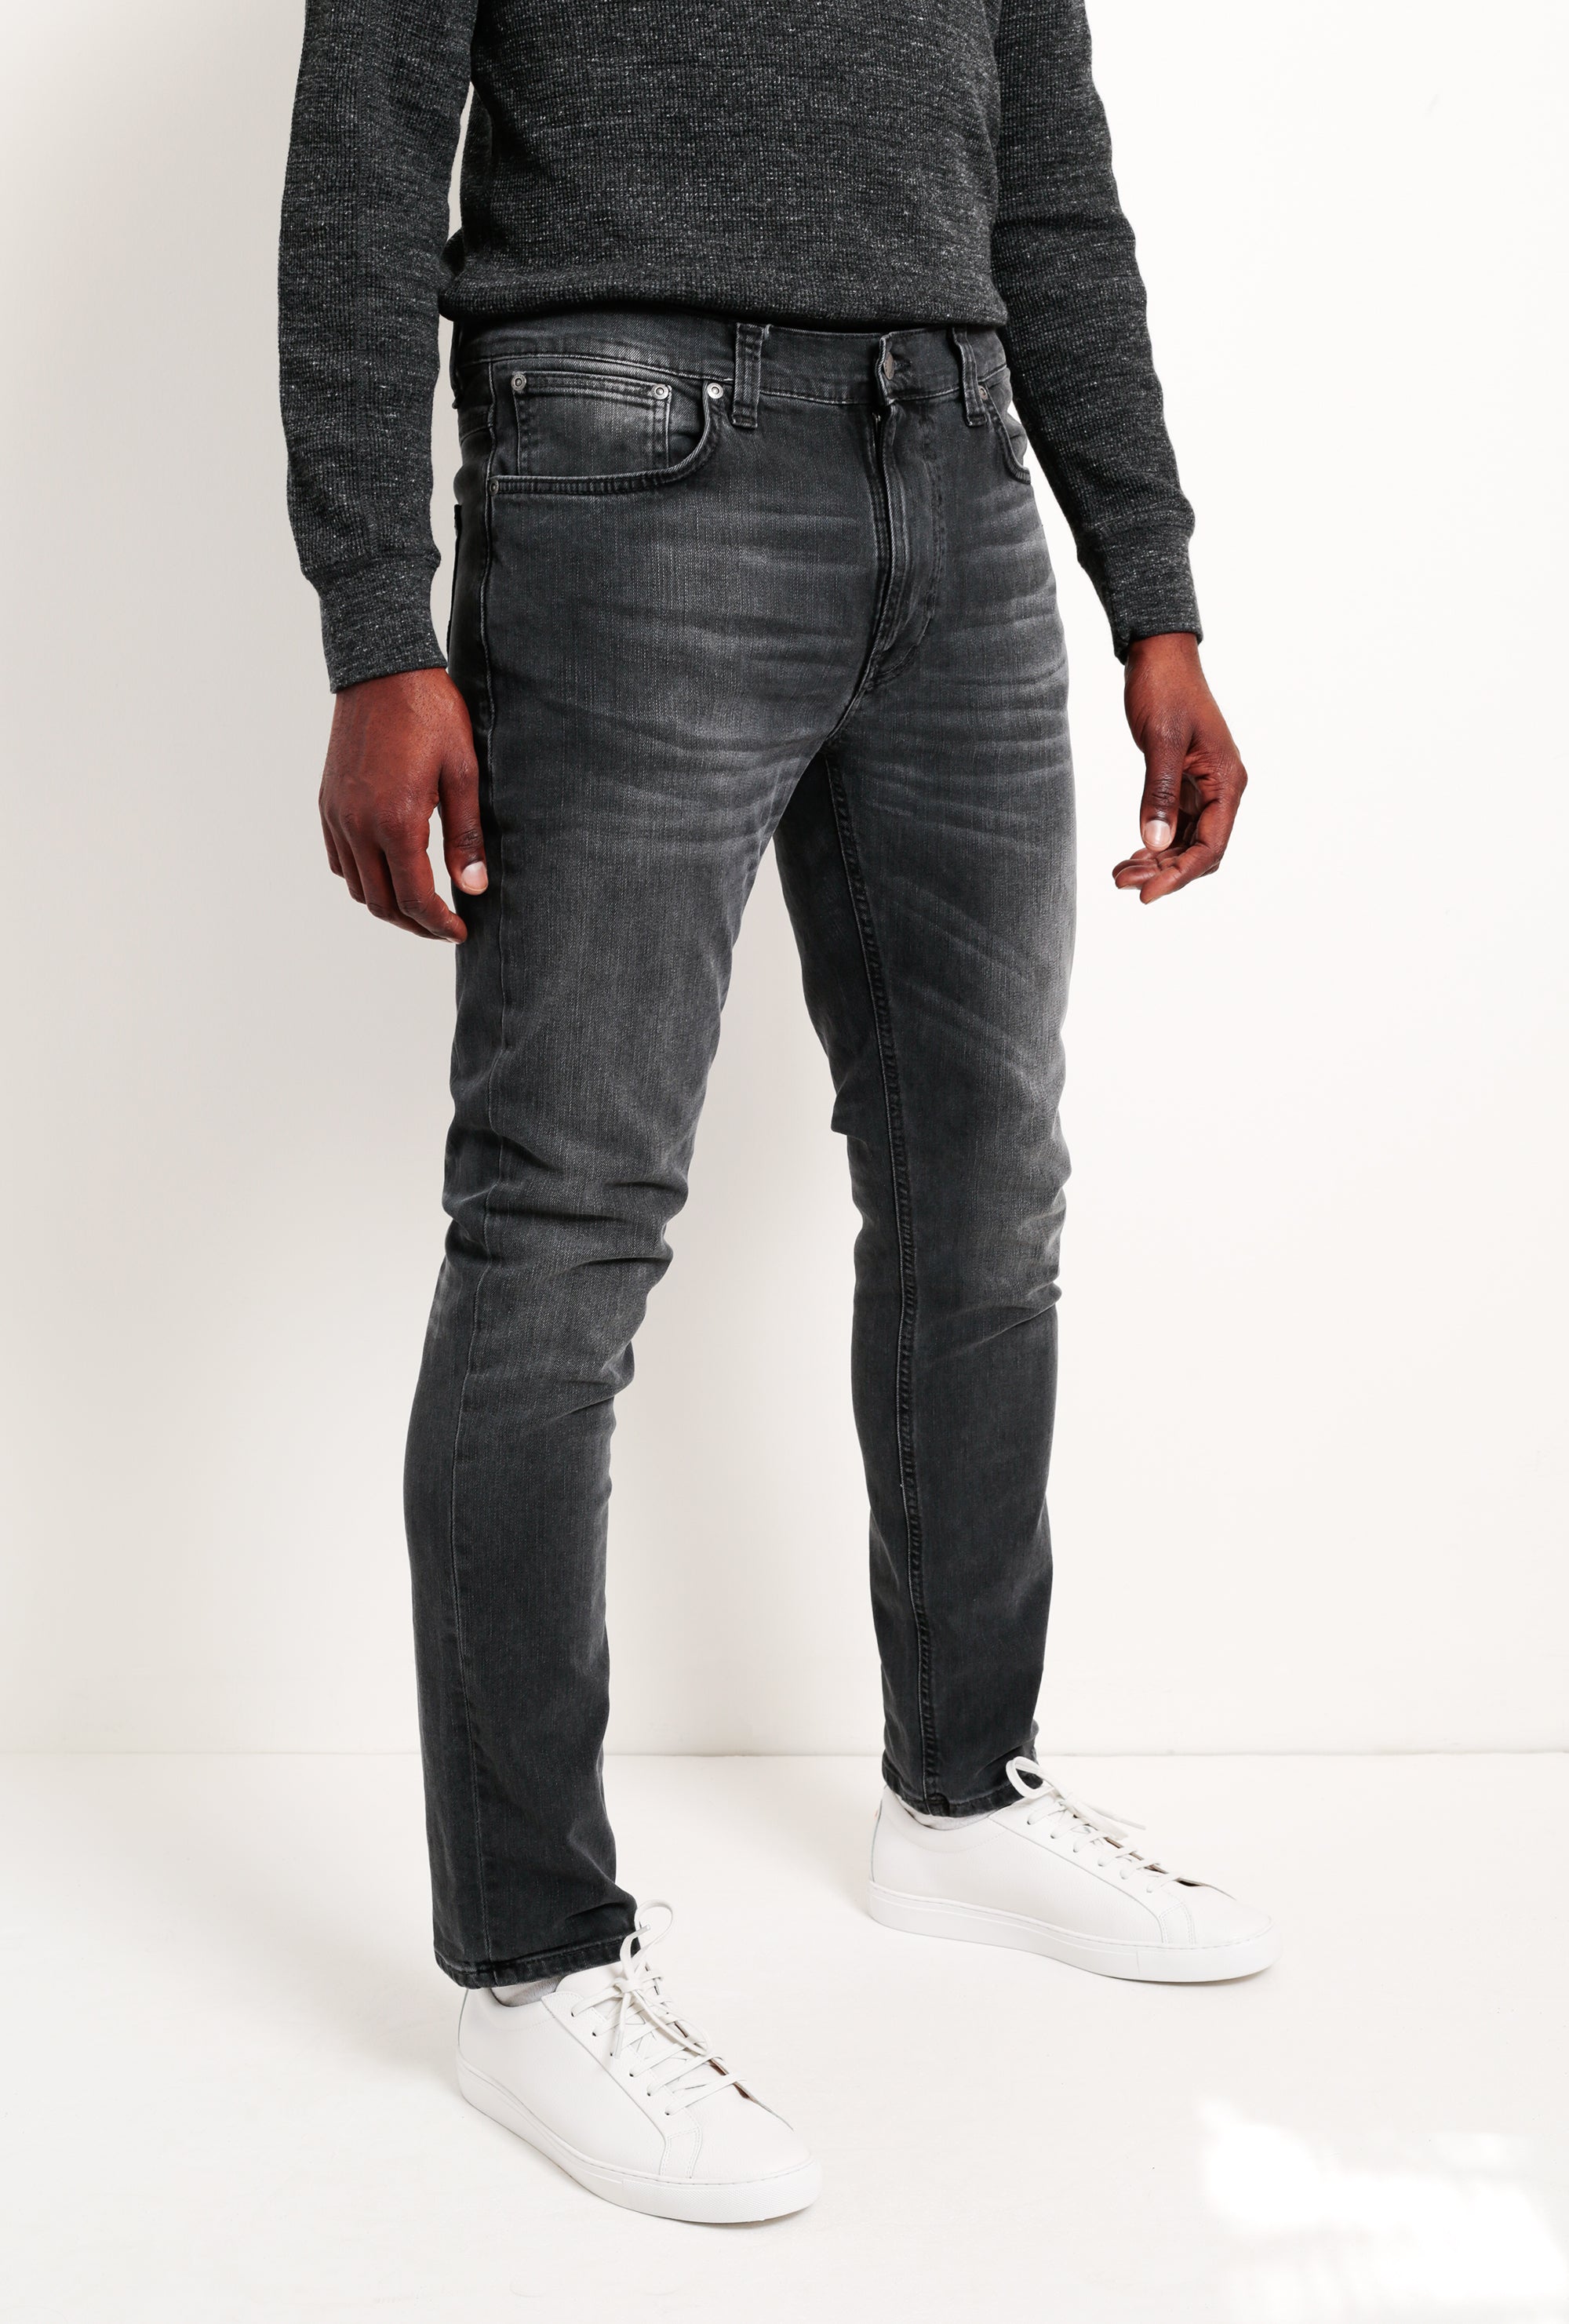 branded company ka jeans